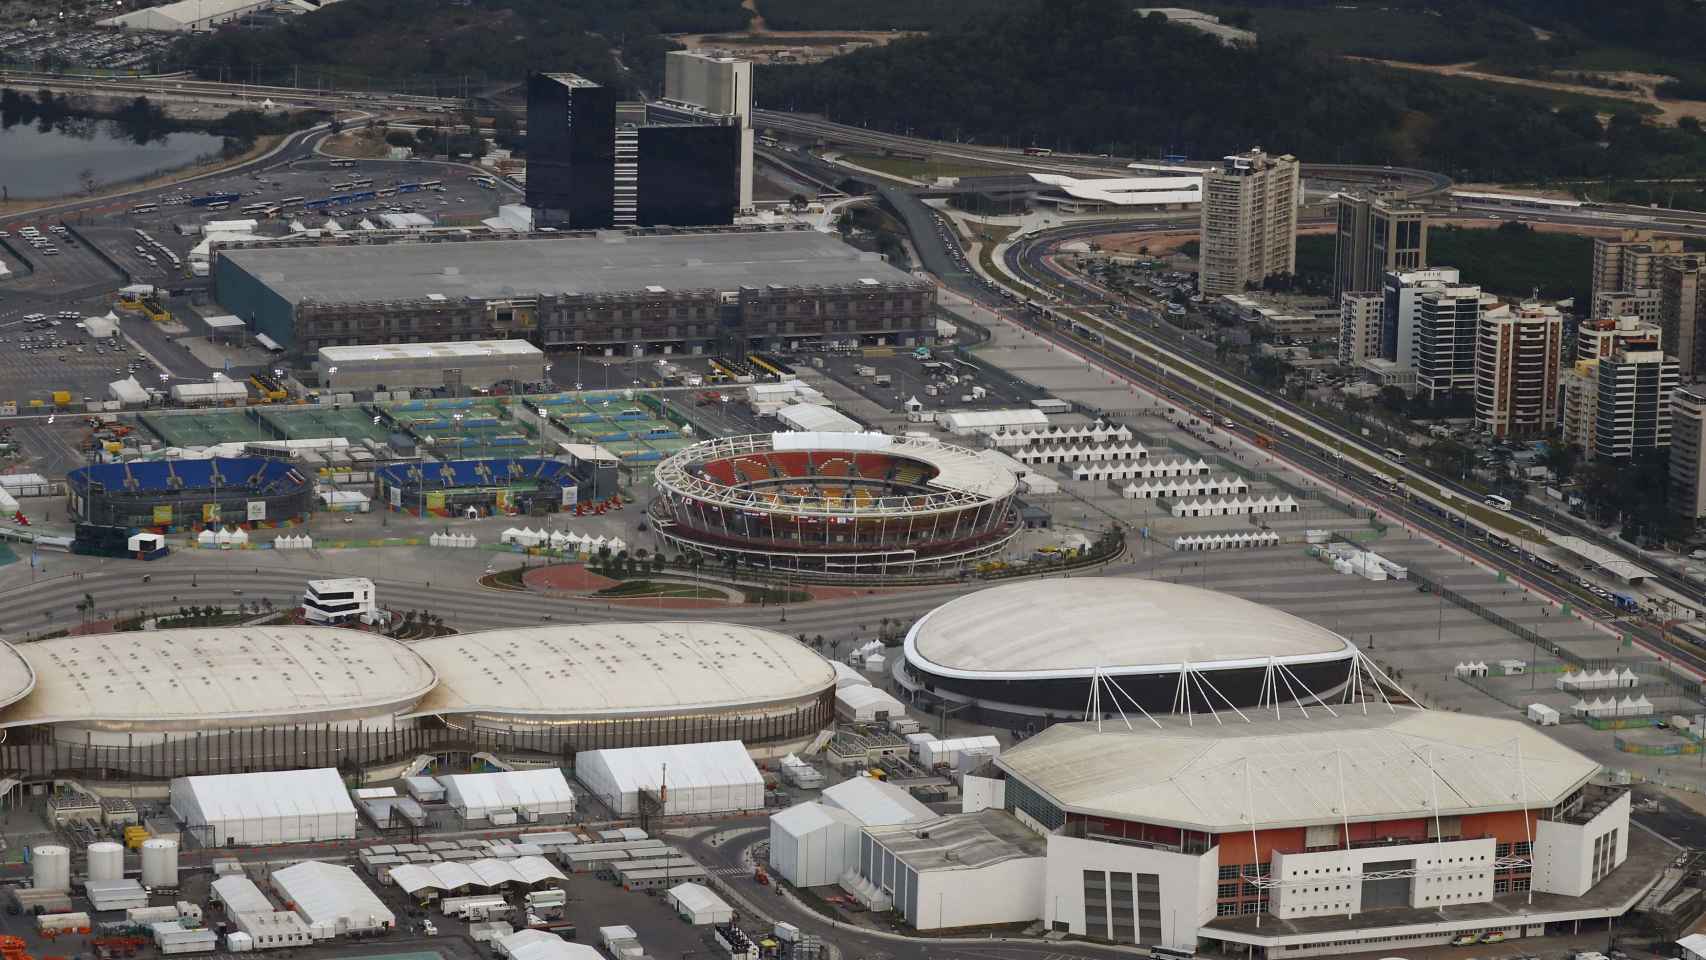 Vista aérea del parque olímpico de Río.